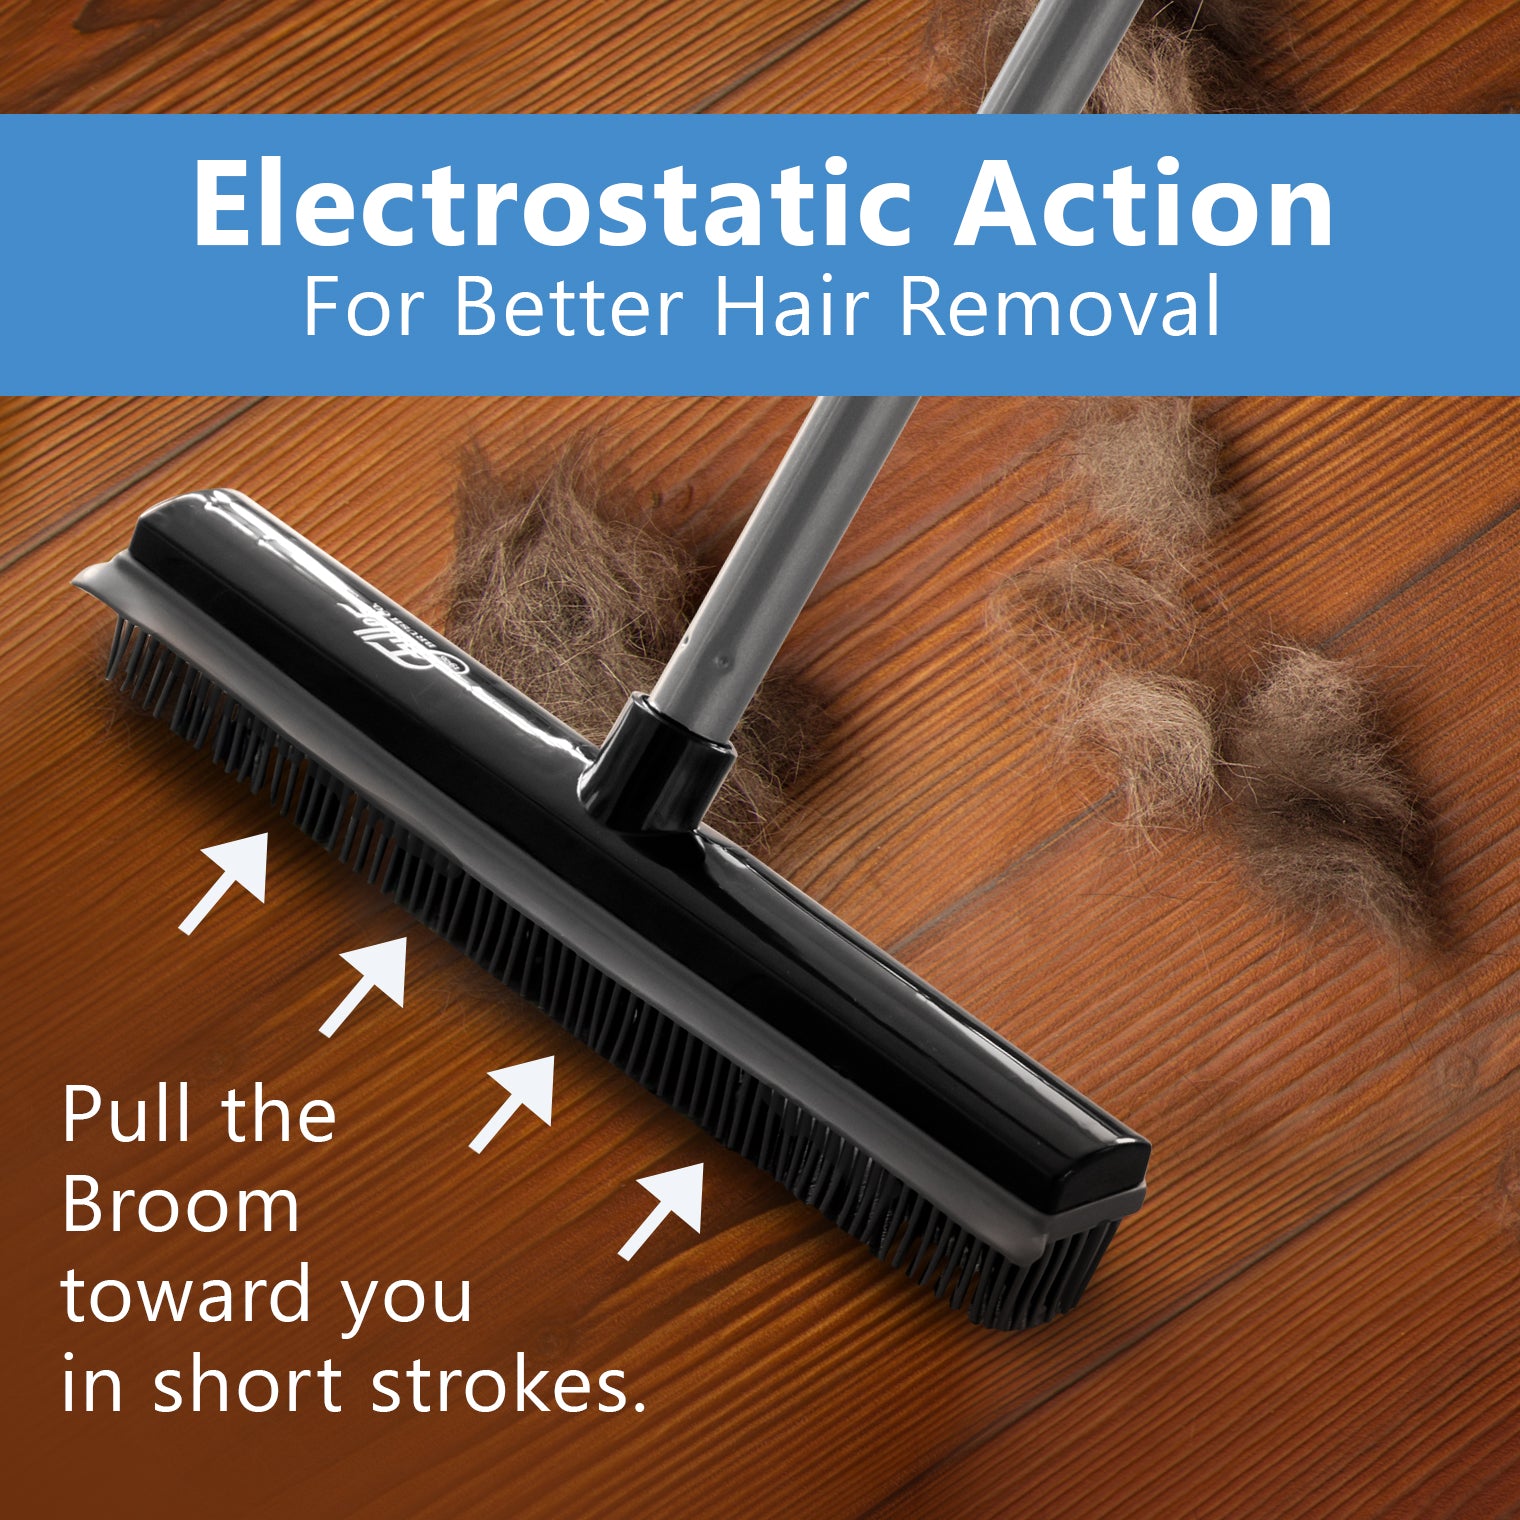 Pet Hair Cleanup: Fur Be Gone Broom